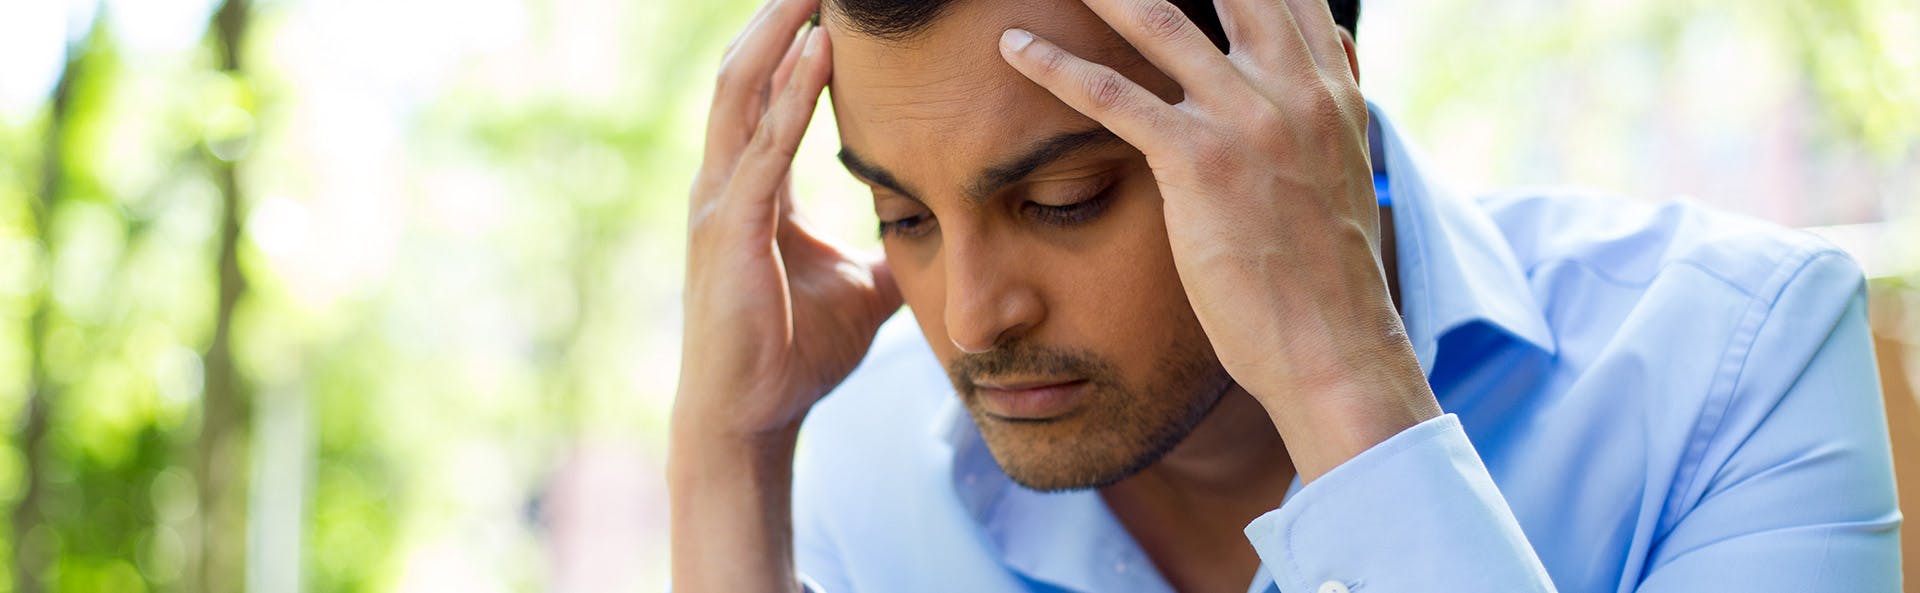 A man suffering from a headache